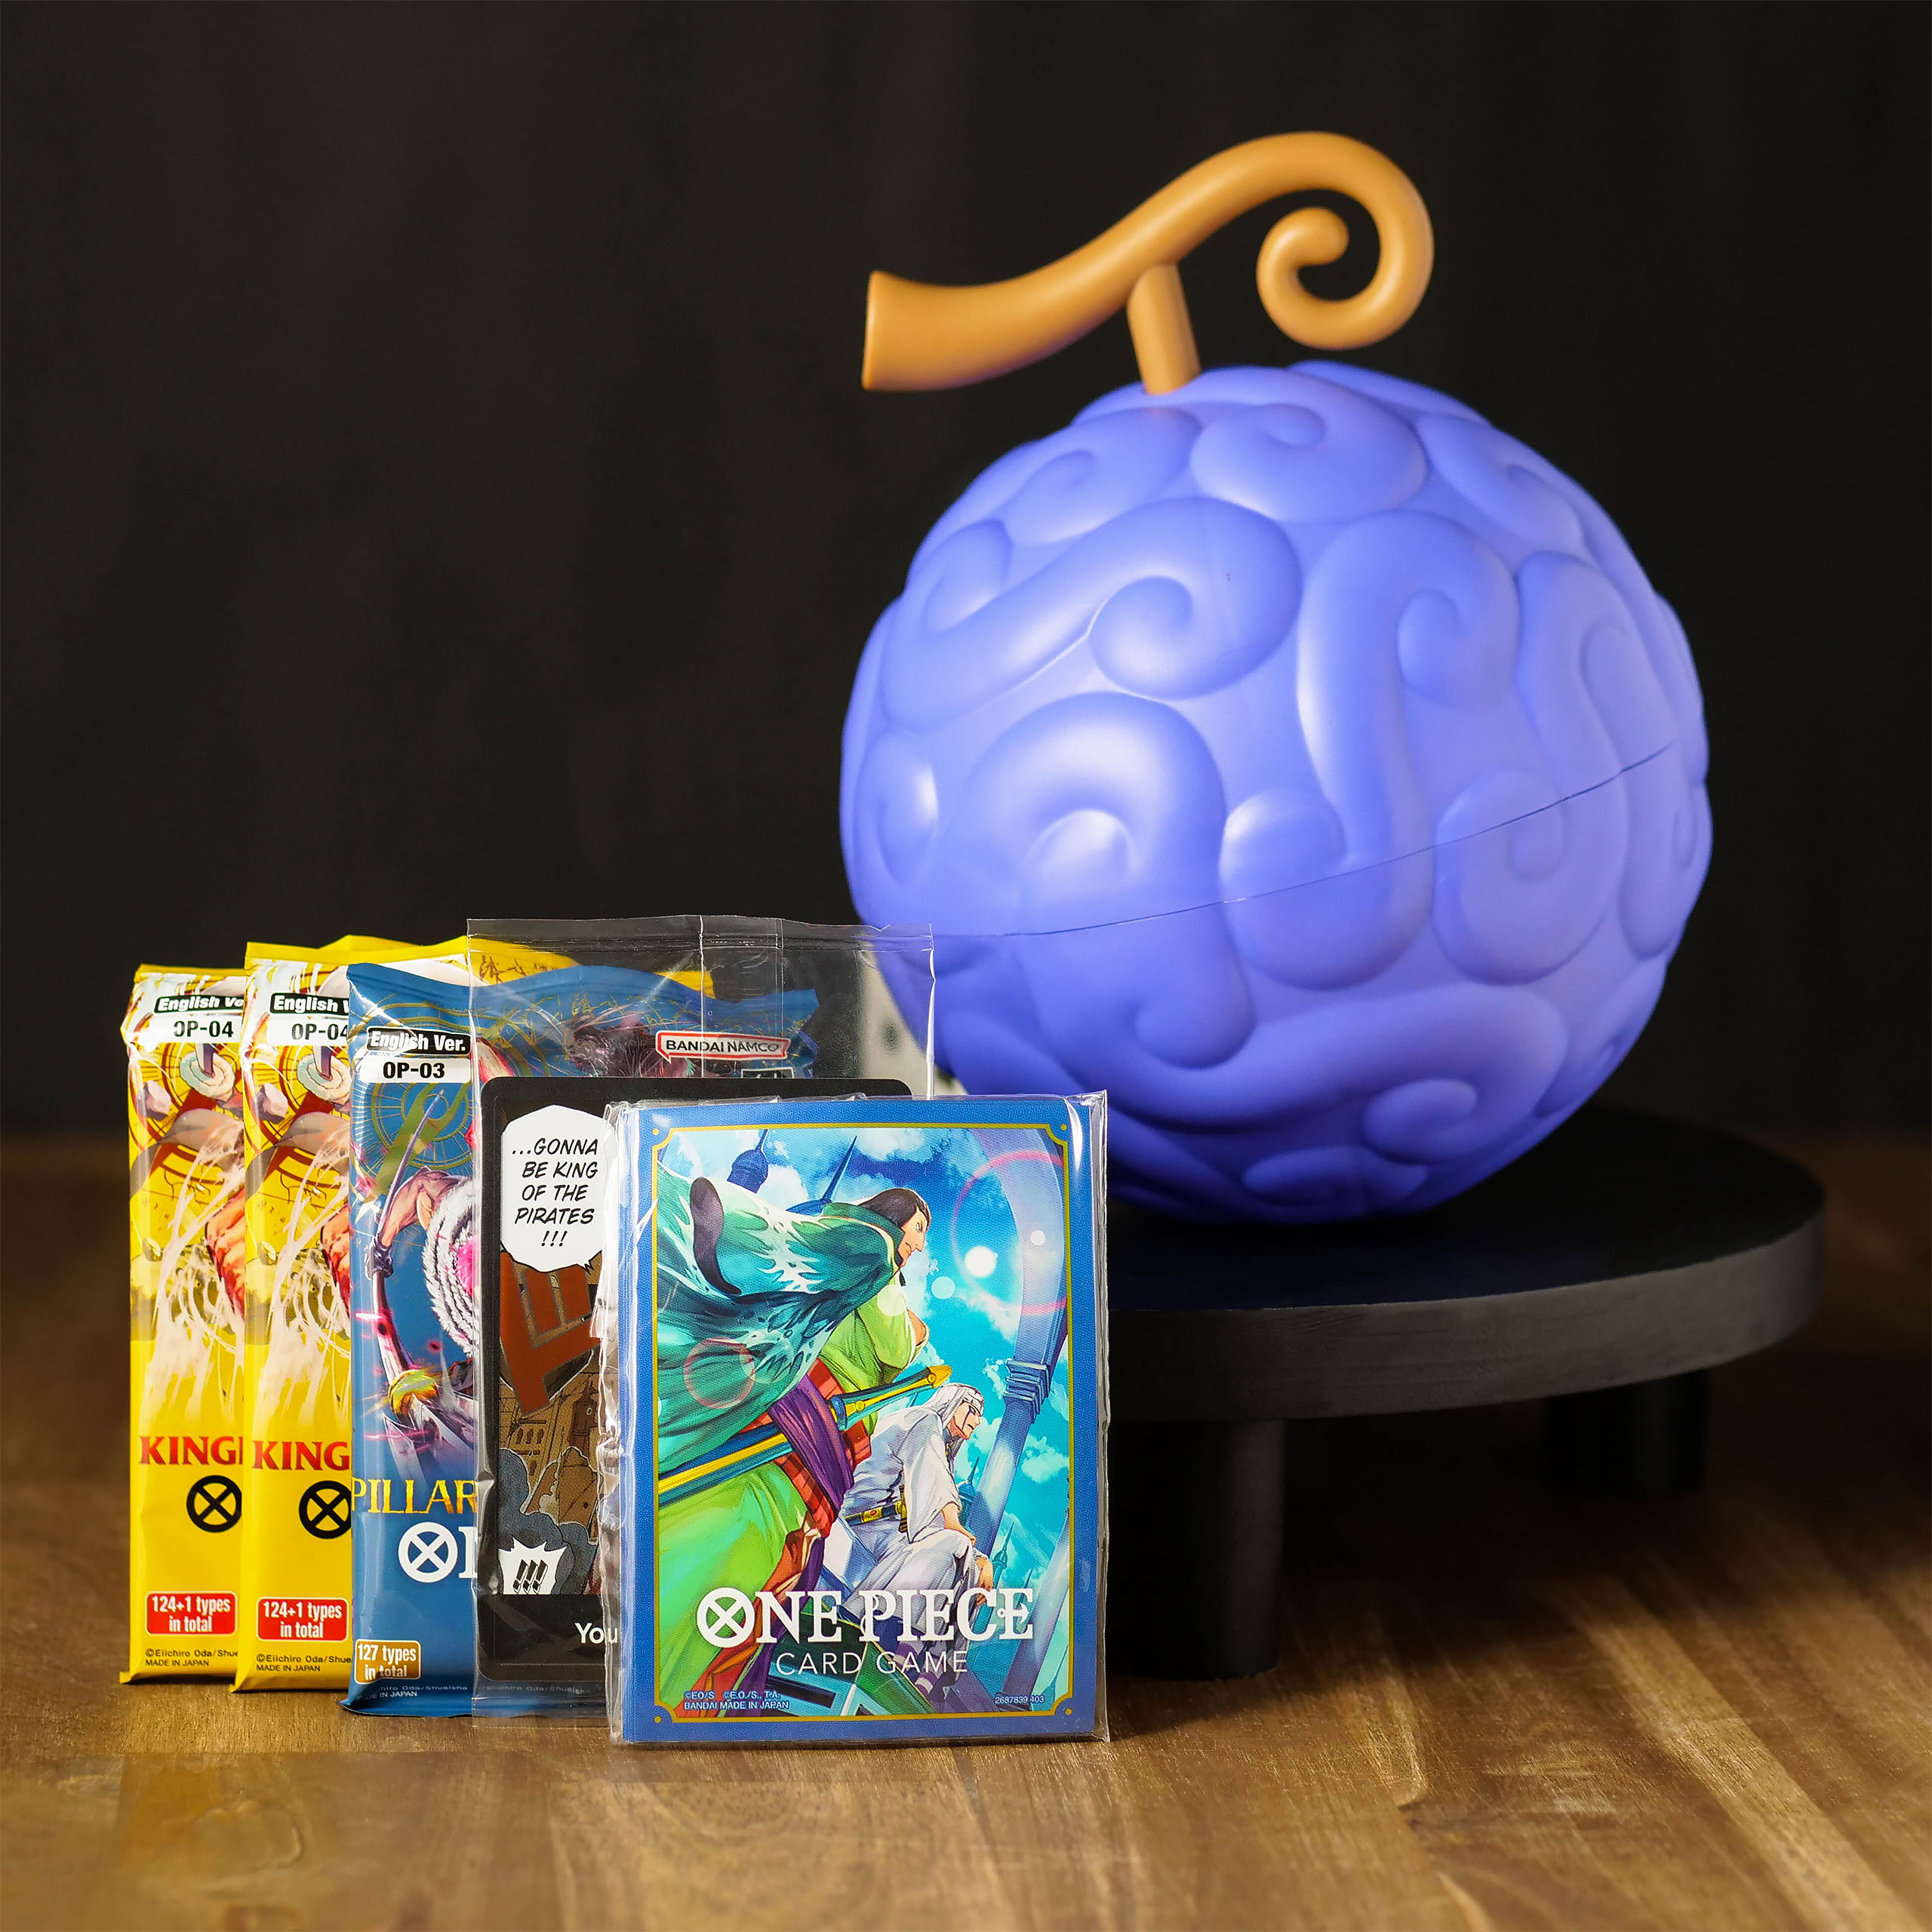 One Piece Card Game - Gomu Gomu Teufelsfrucht Sammelkarten Box